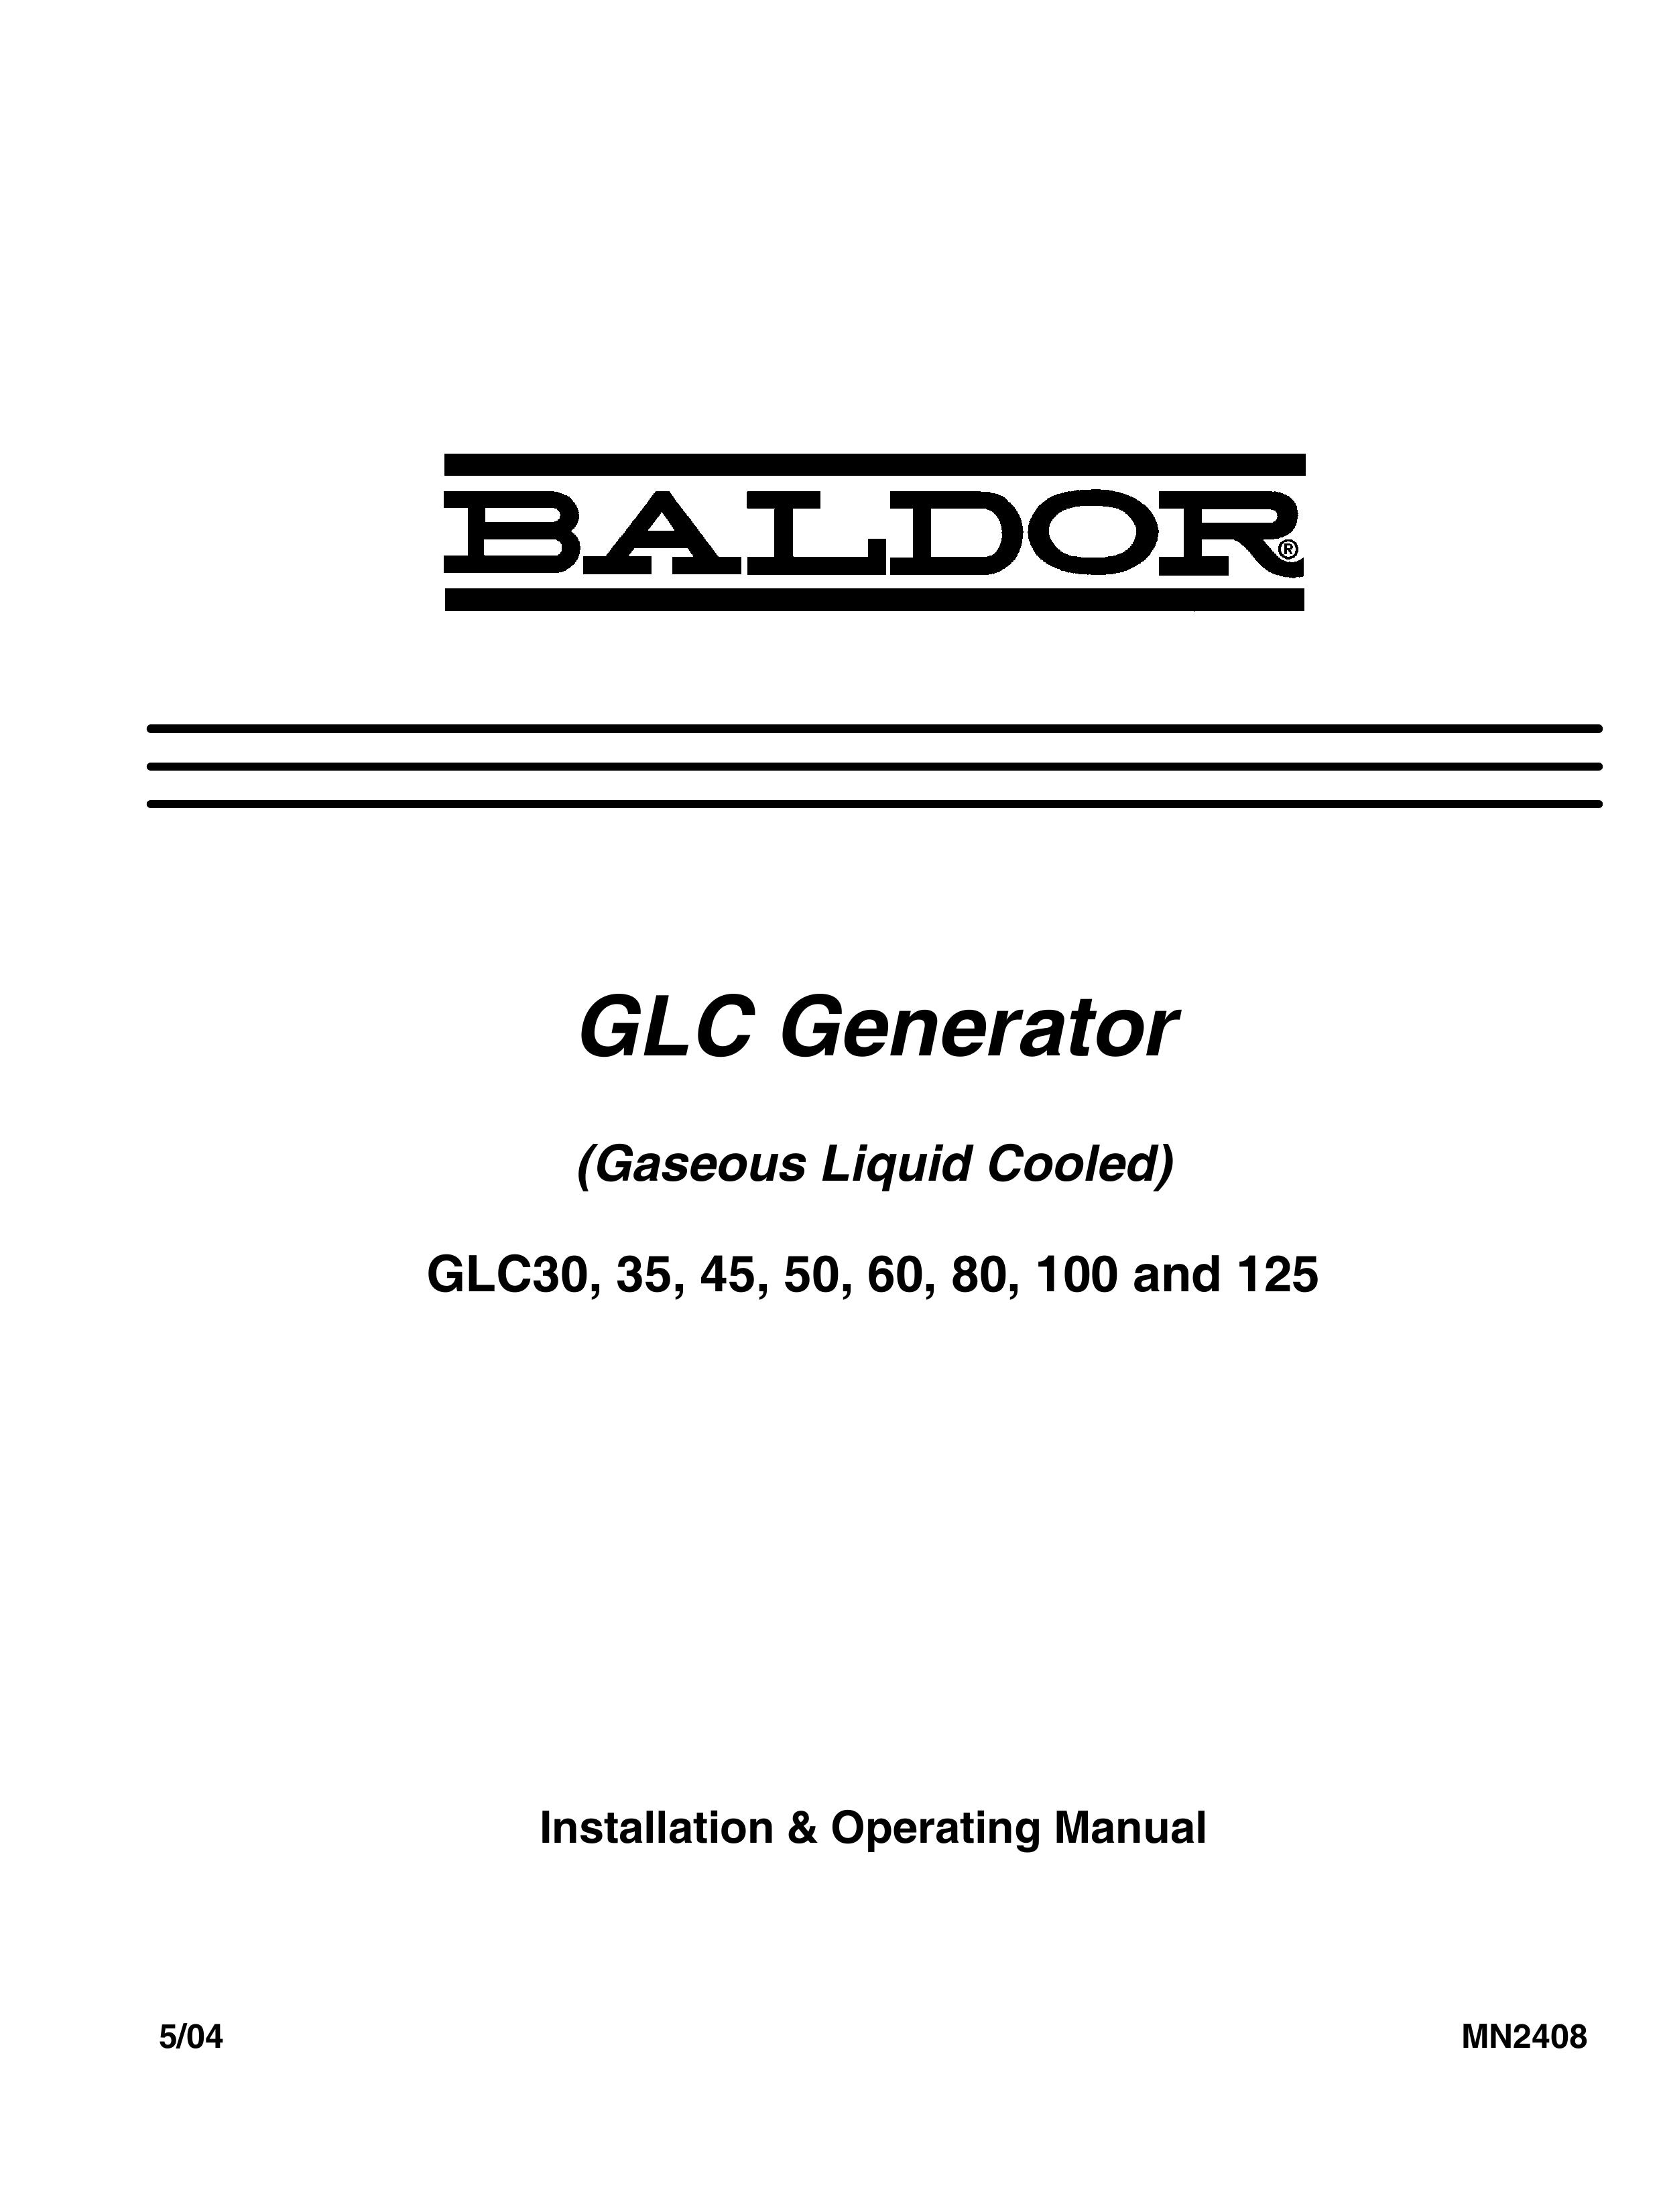 Baldor GLC60 Portable Generator User Manual